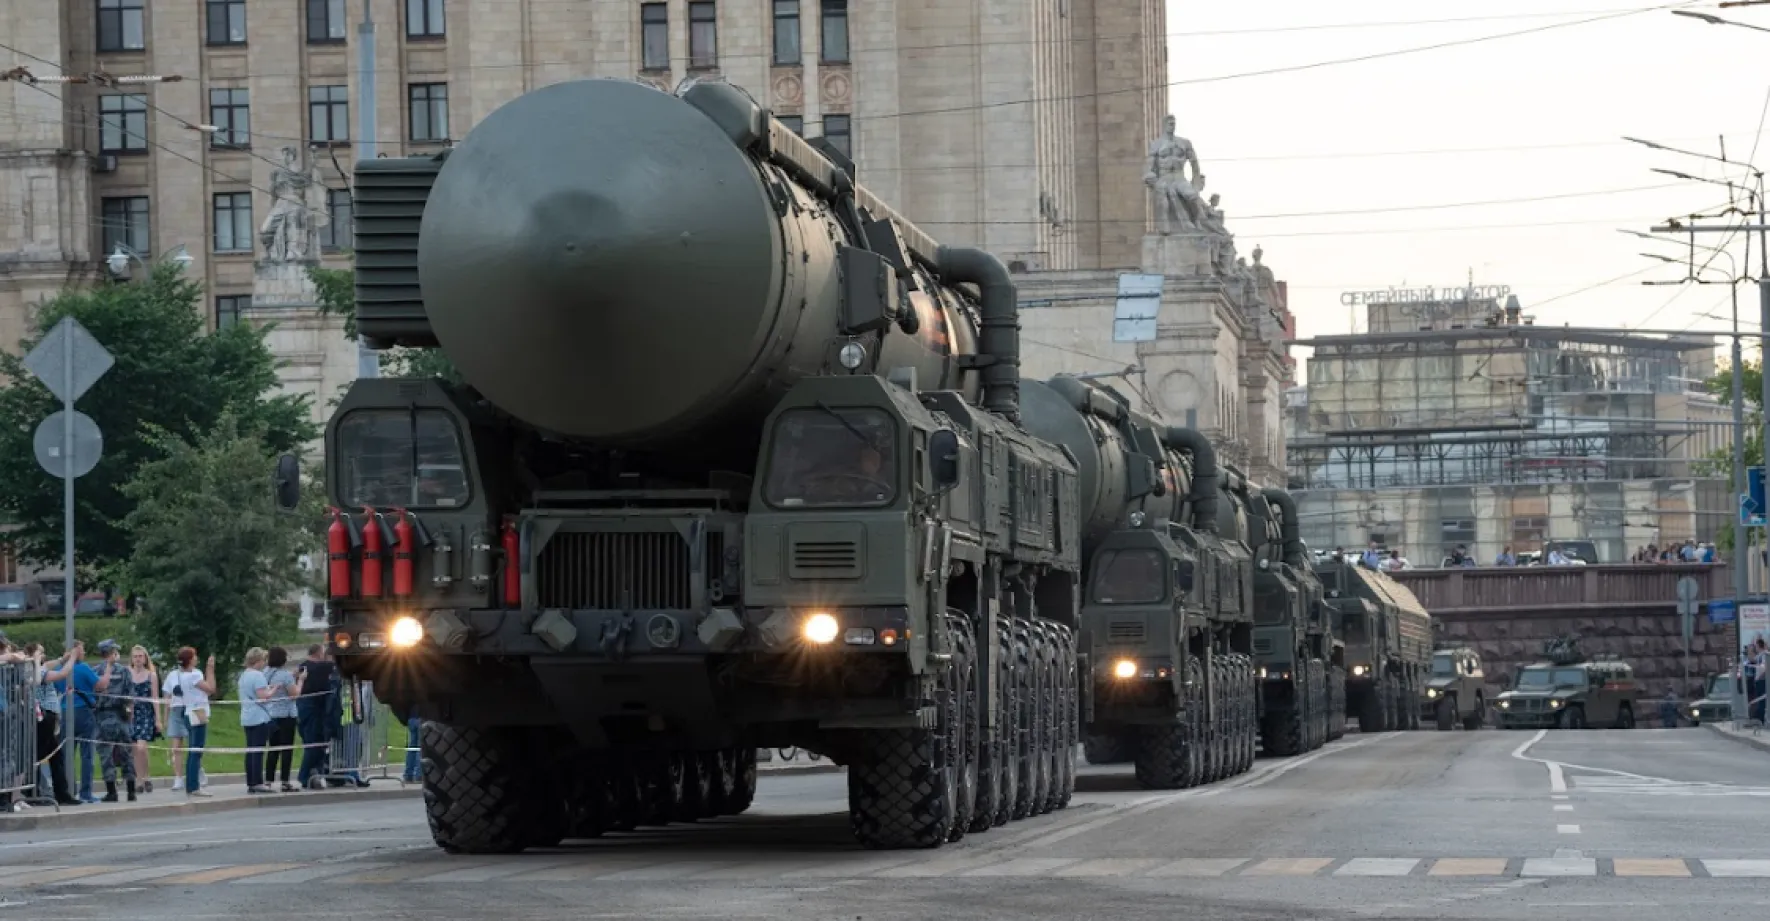 Rusko předvádí své jaderné rakety, zahájilo rozsáhlé vojenské cvičení